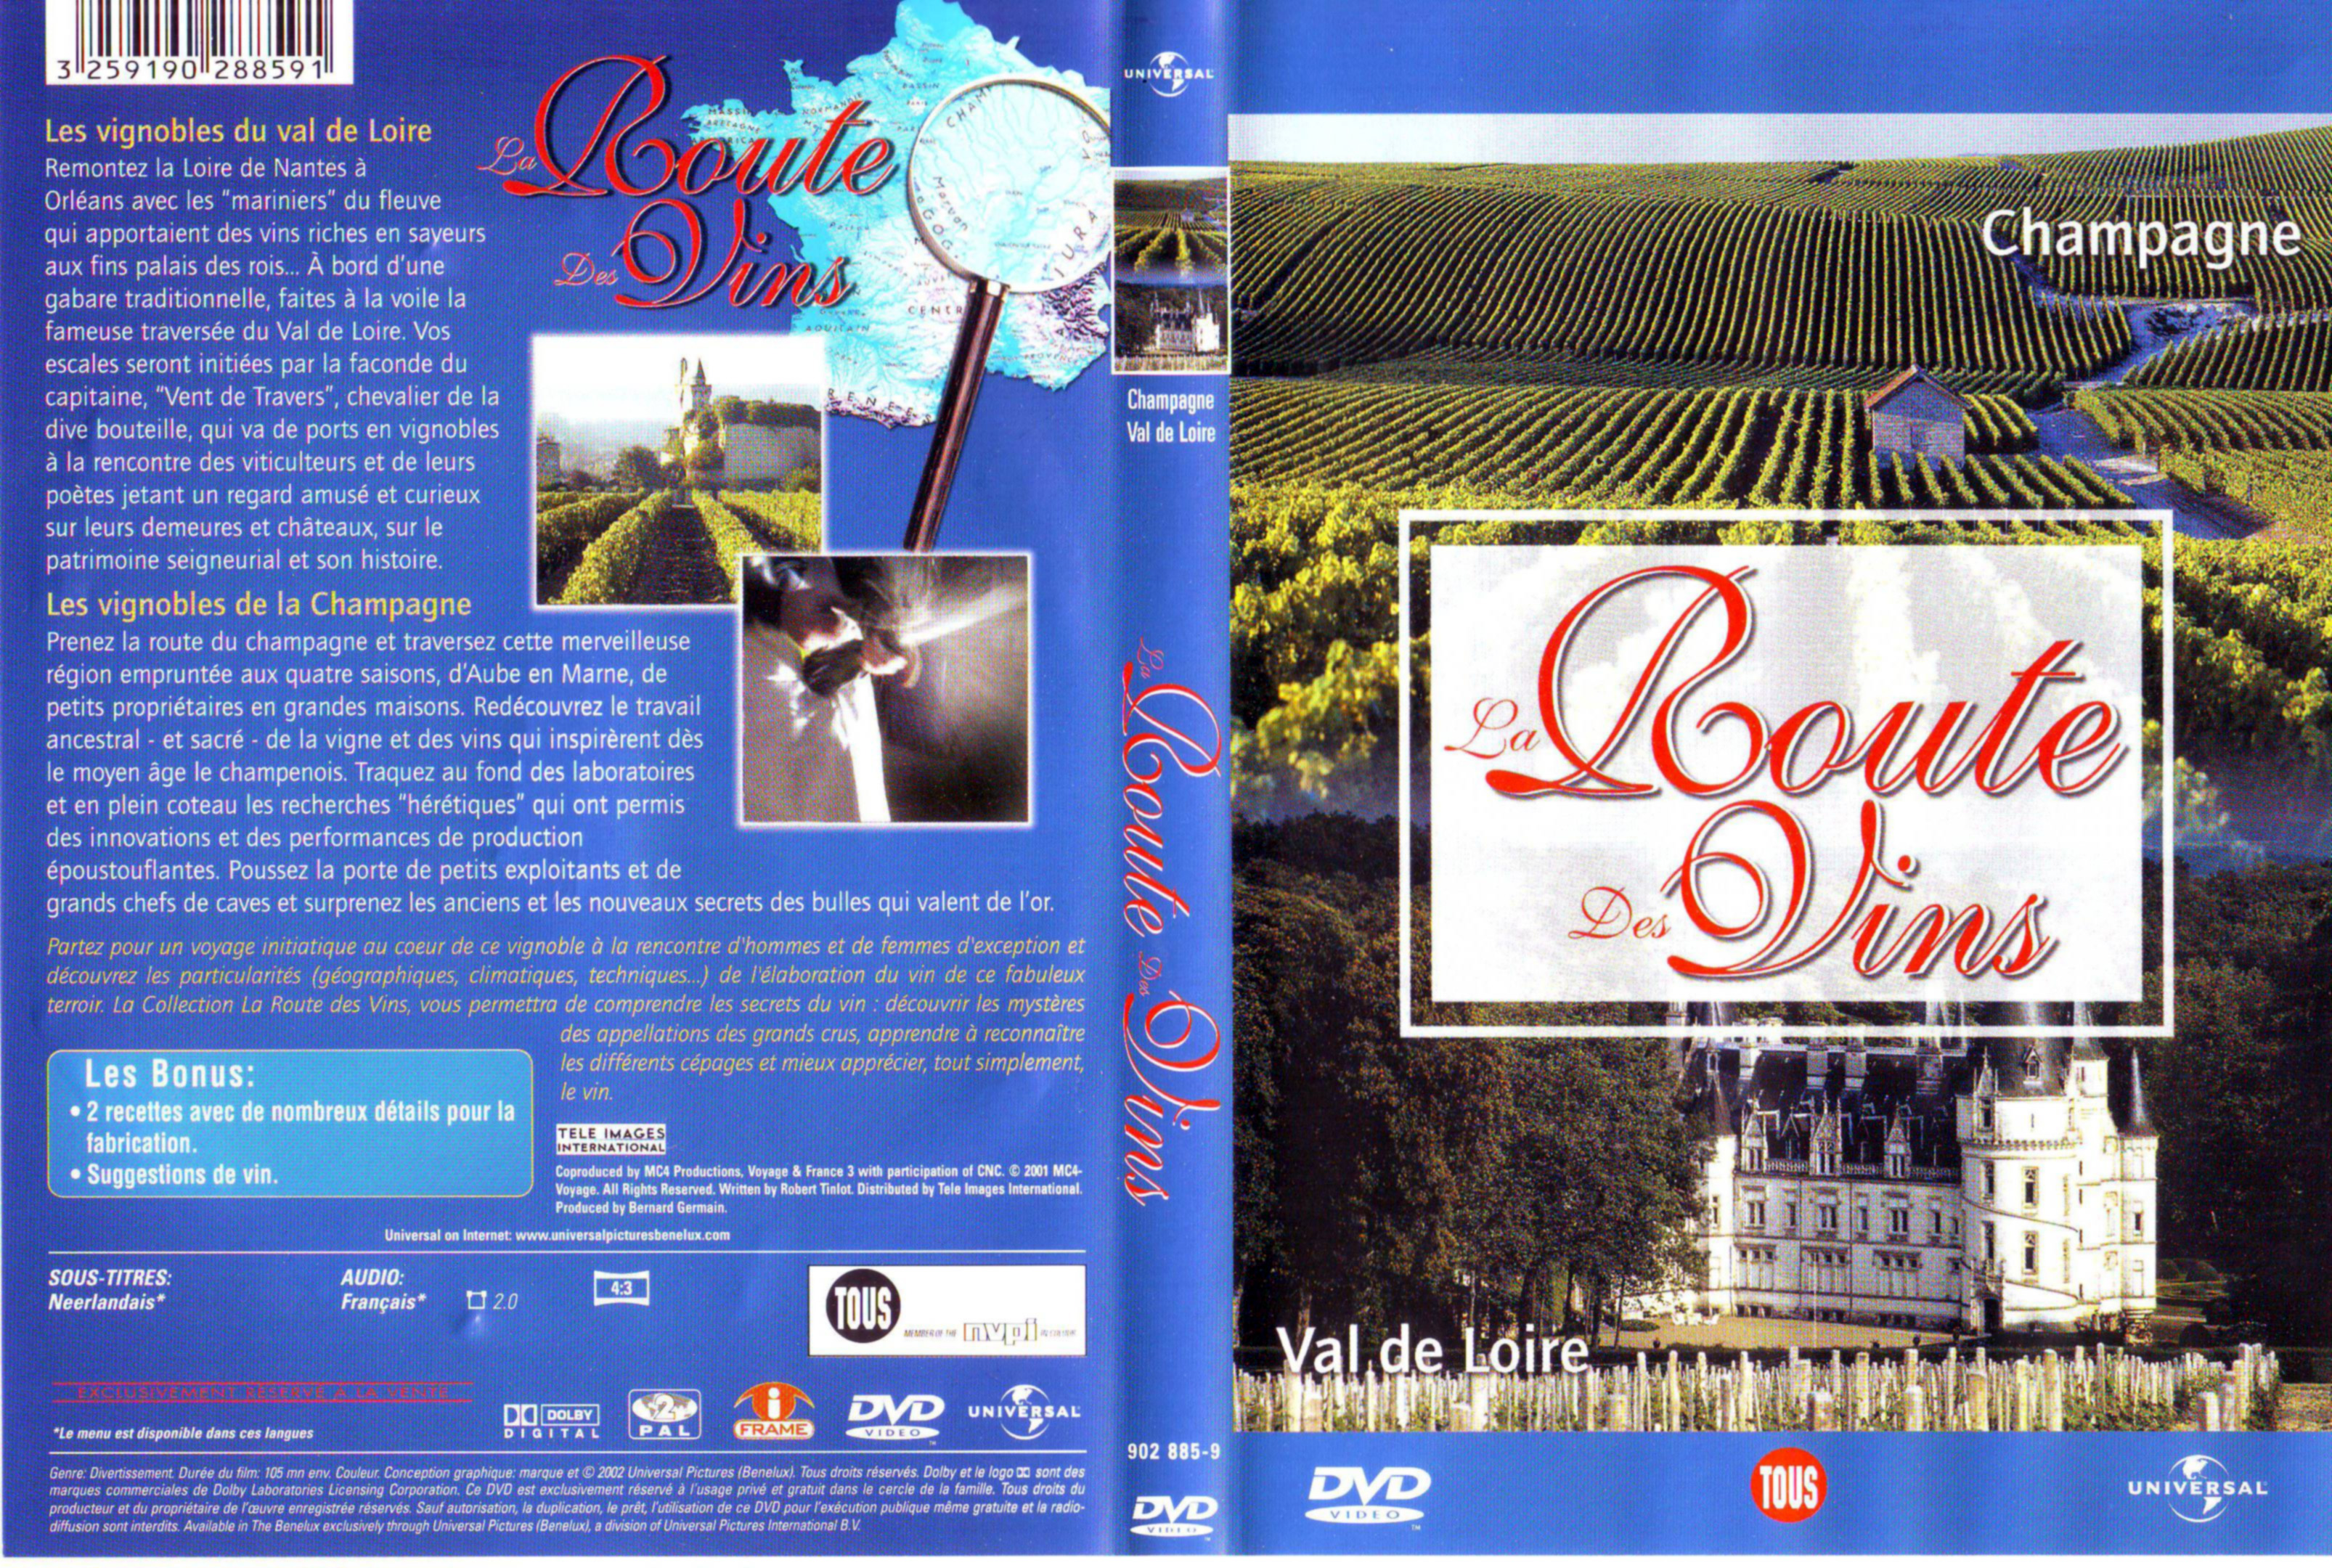 Jaquette DVD La route des vins - Champagne Loire